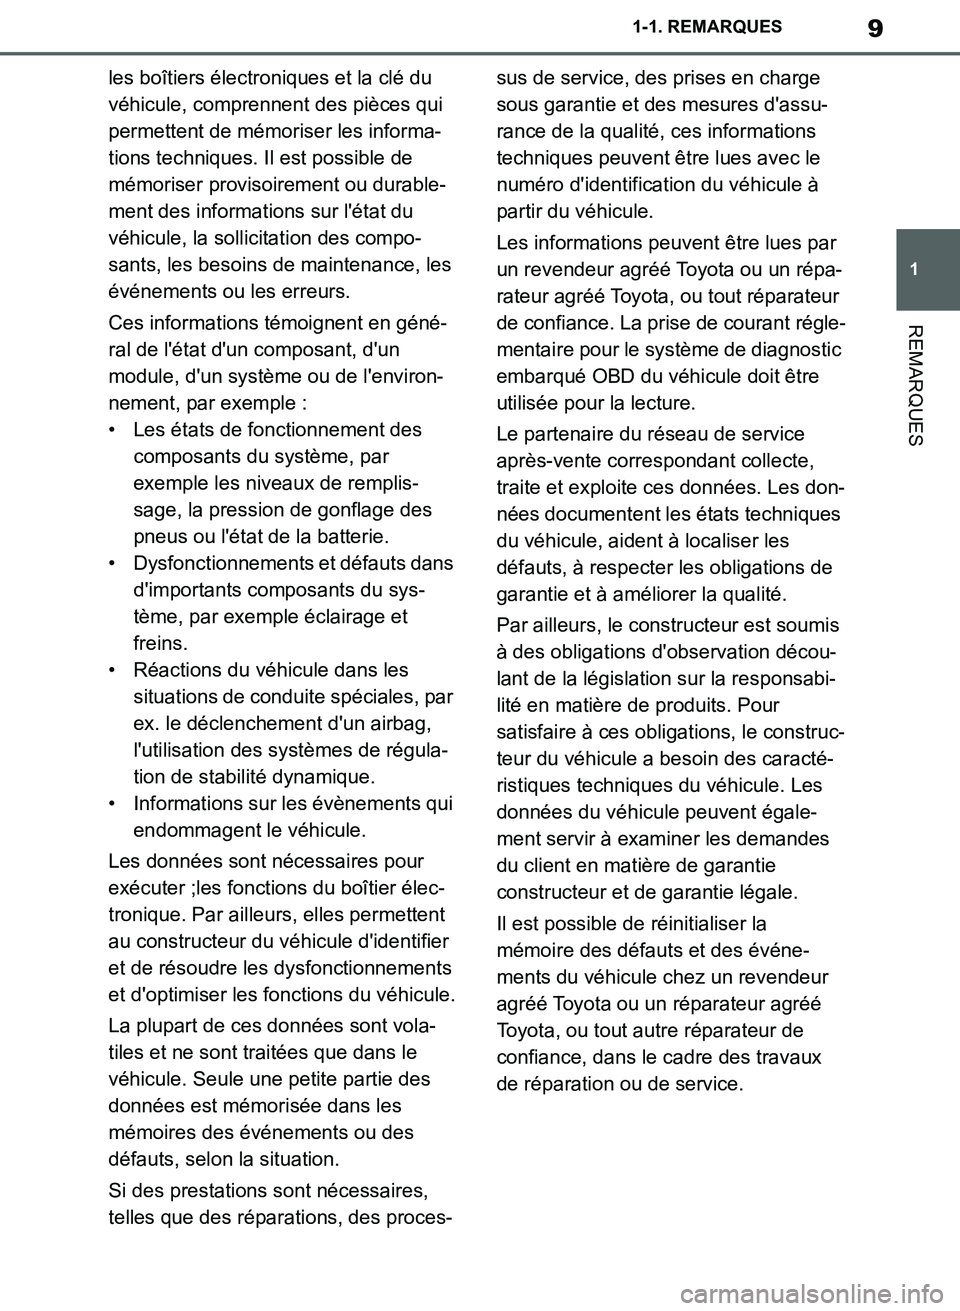 TOYOTA SUPRA 2019  Notices Demploi (in French) 9
1
Supra Owners Manual_EK
1-1. REMARQUES
REMARQUES
les boîtiers électroniques et la clé du 
véhicule, comprennent des pièces qui 
permettent de mémoriser les informa-
tions techniques. Il est 